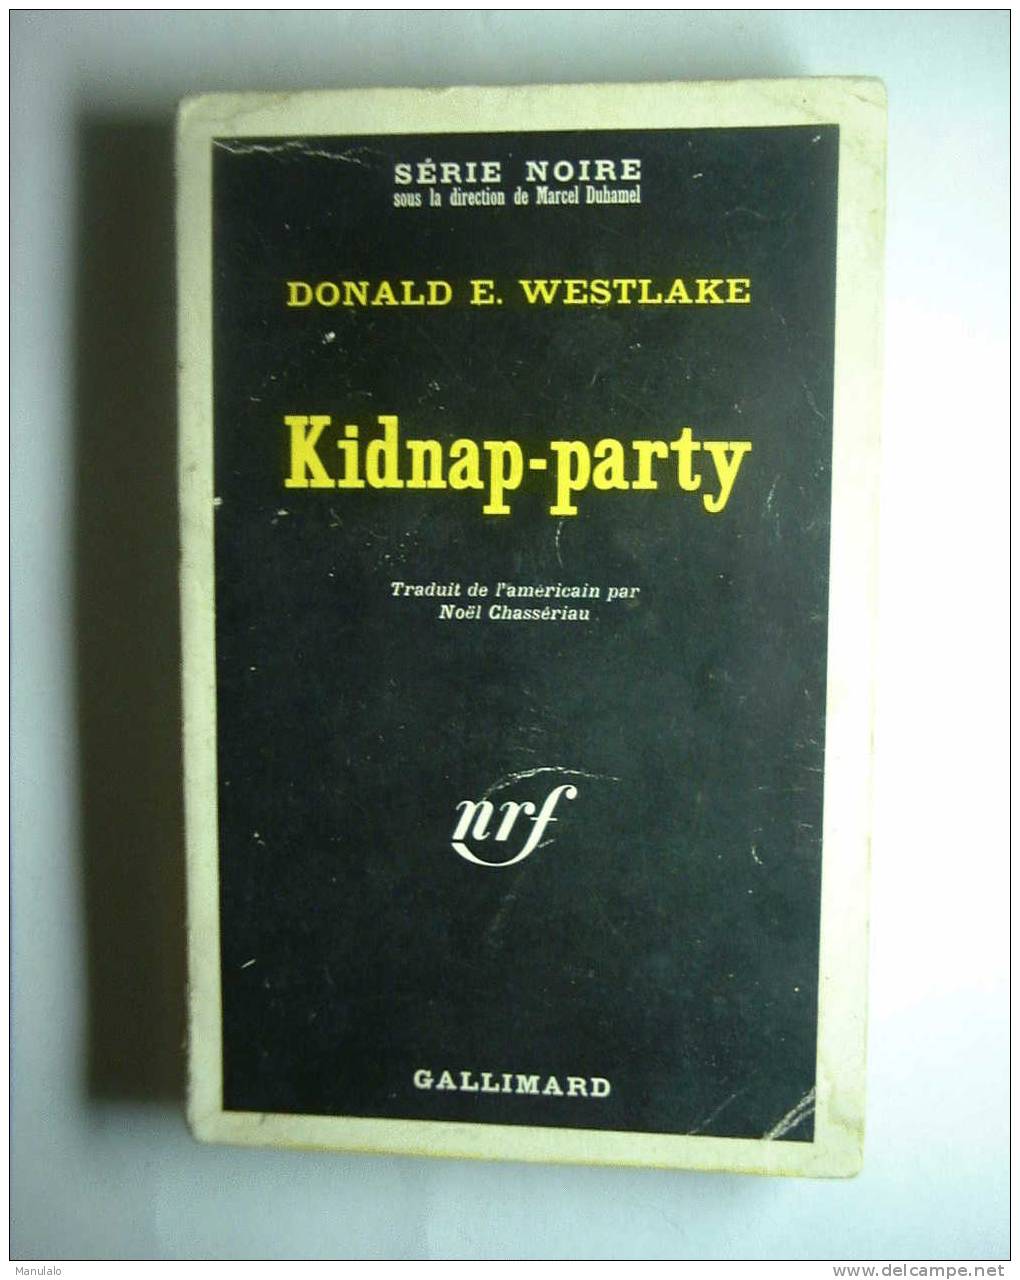 Livre Gallimard Série Noire De Donald E. Westlake " Kidnap-party " Année 1970 - Série Noire